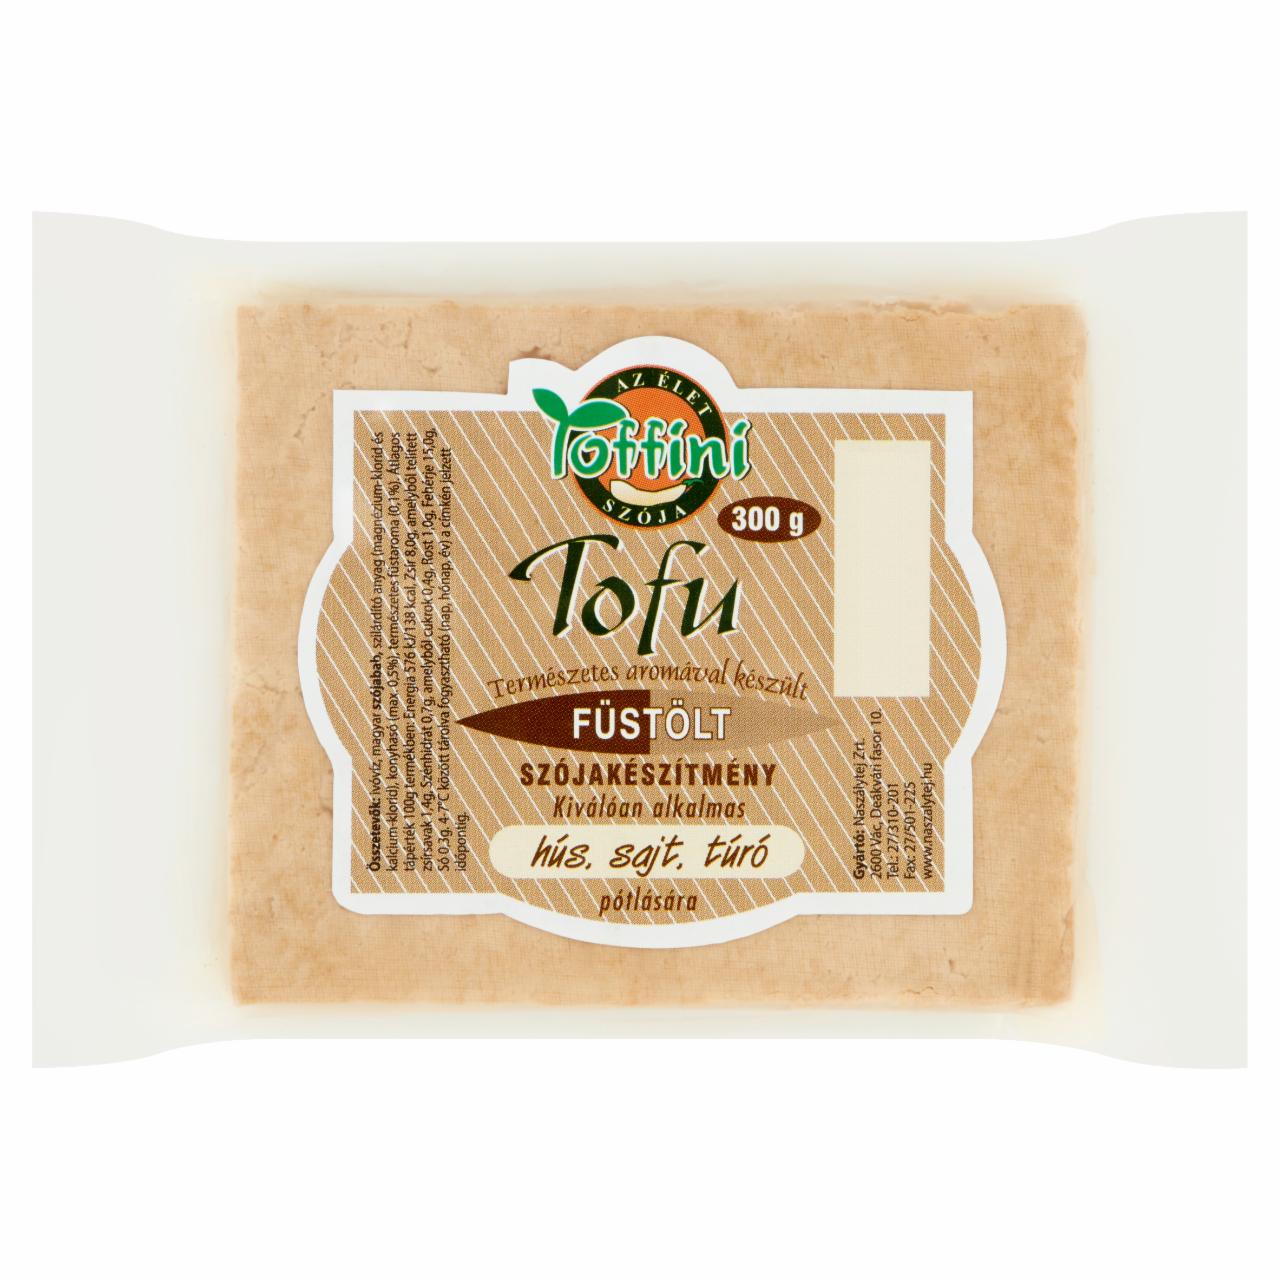 Képek - Toffini füstölt tofu 300 g